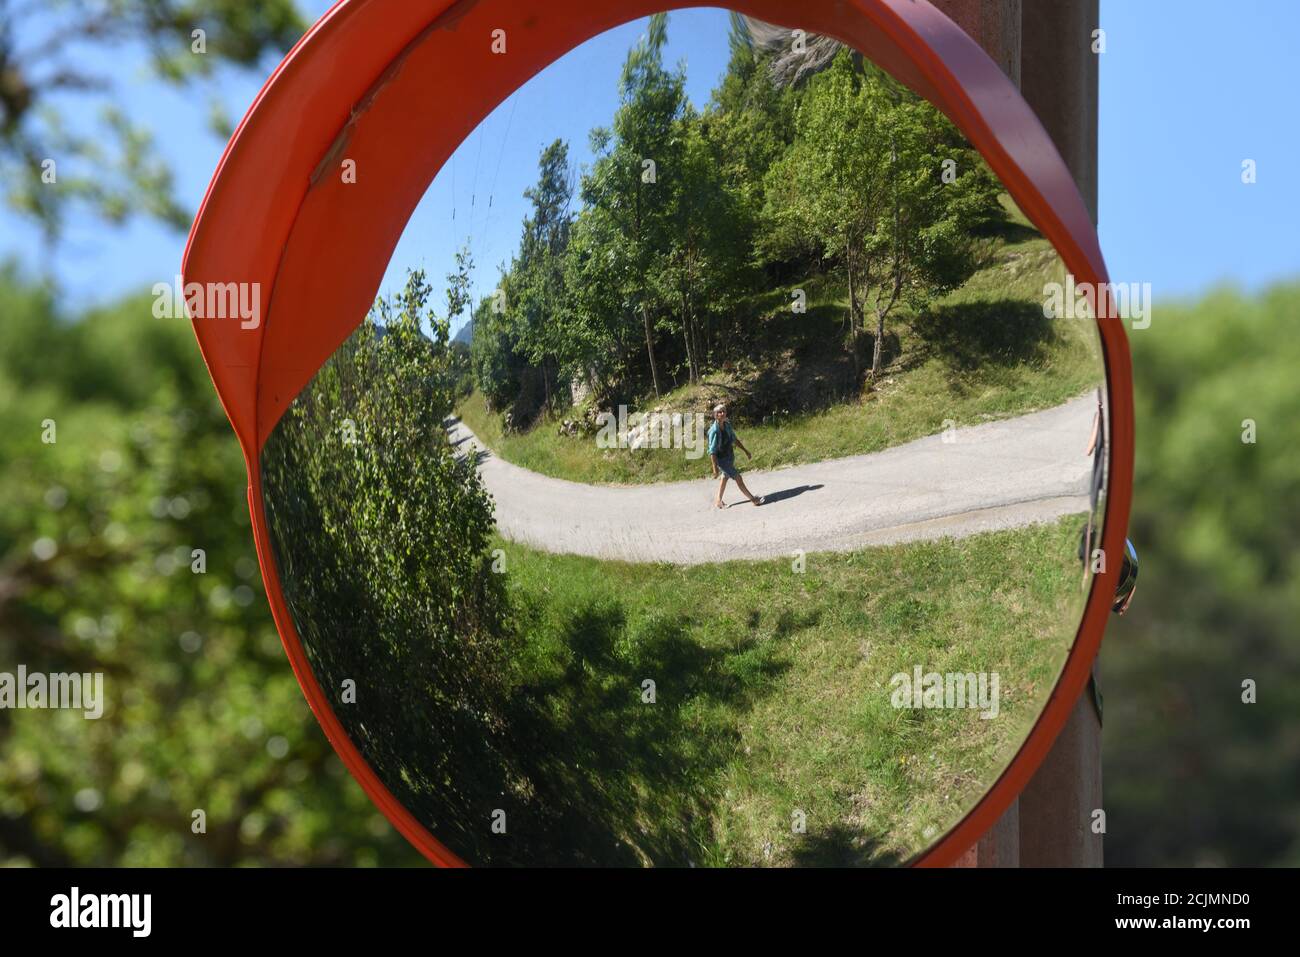 Miroir incurvé, miroir à distorsion, miroir de sécurité routière circulaire ou miroir de sécurité routière reflétant la réflexion déformée ou image miroir de la route de campagne et du paysage Banque D'Images